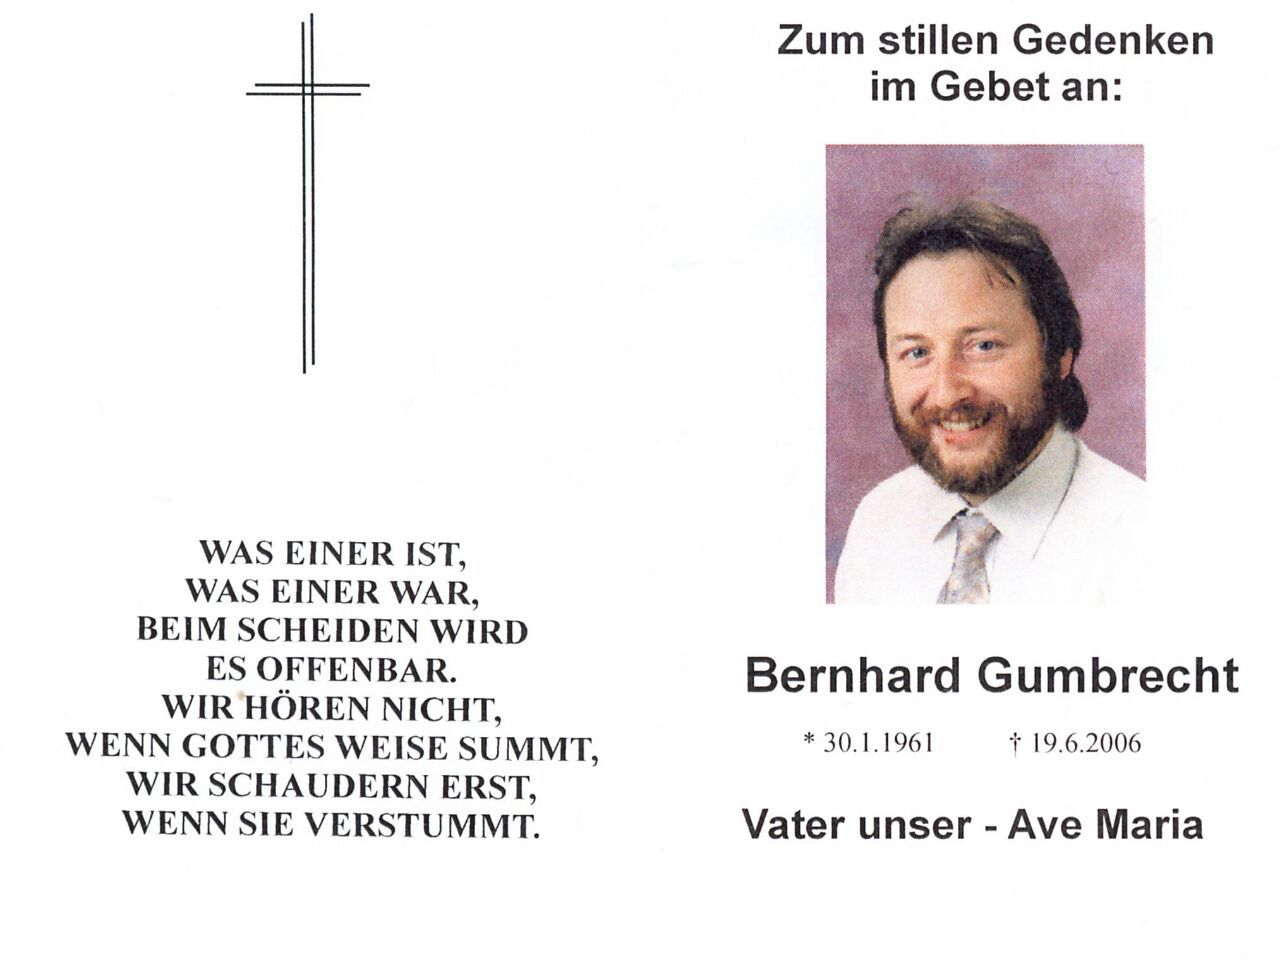 BernhardGumbrecht